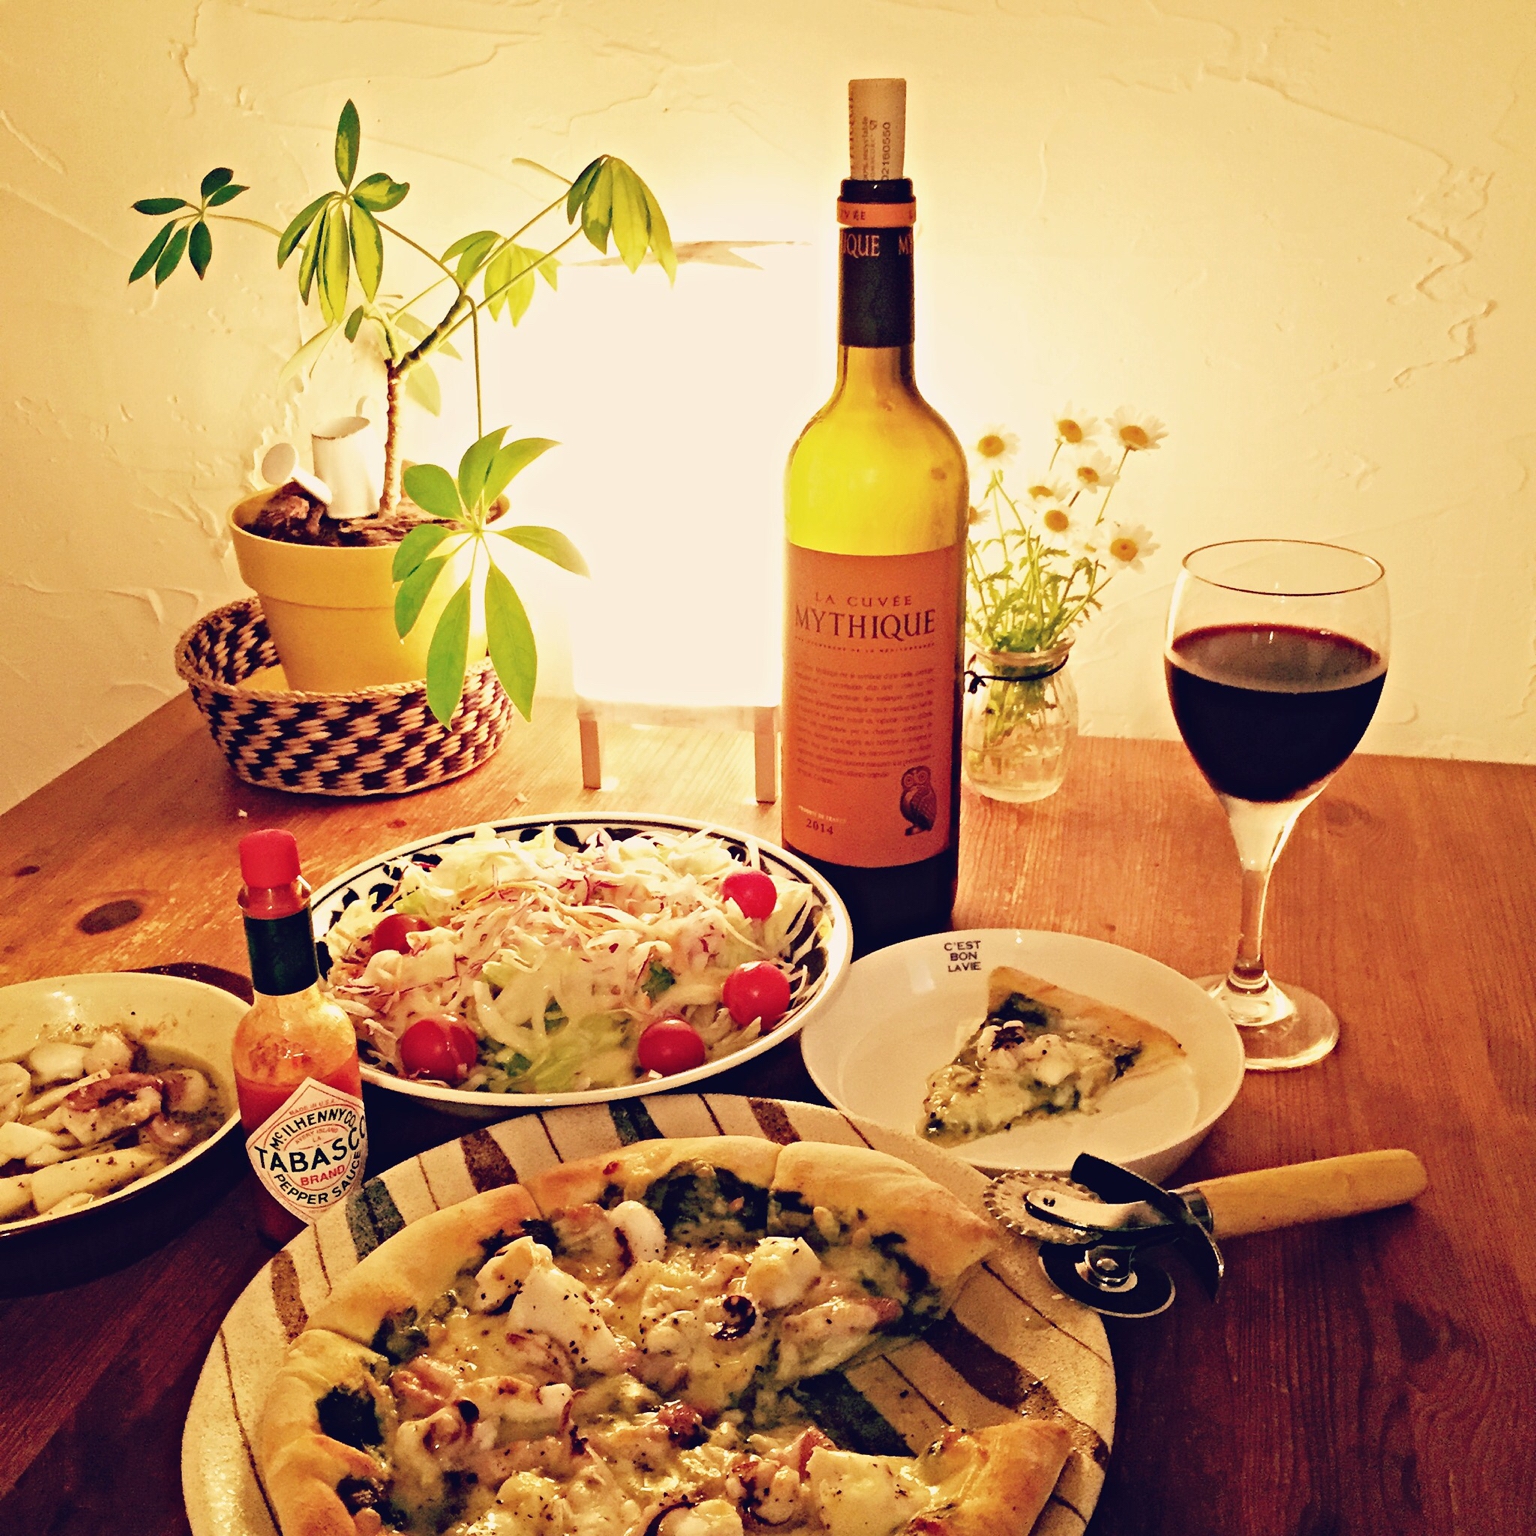 ラ・キュベ・ミティークの食卓風景